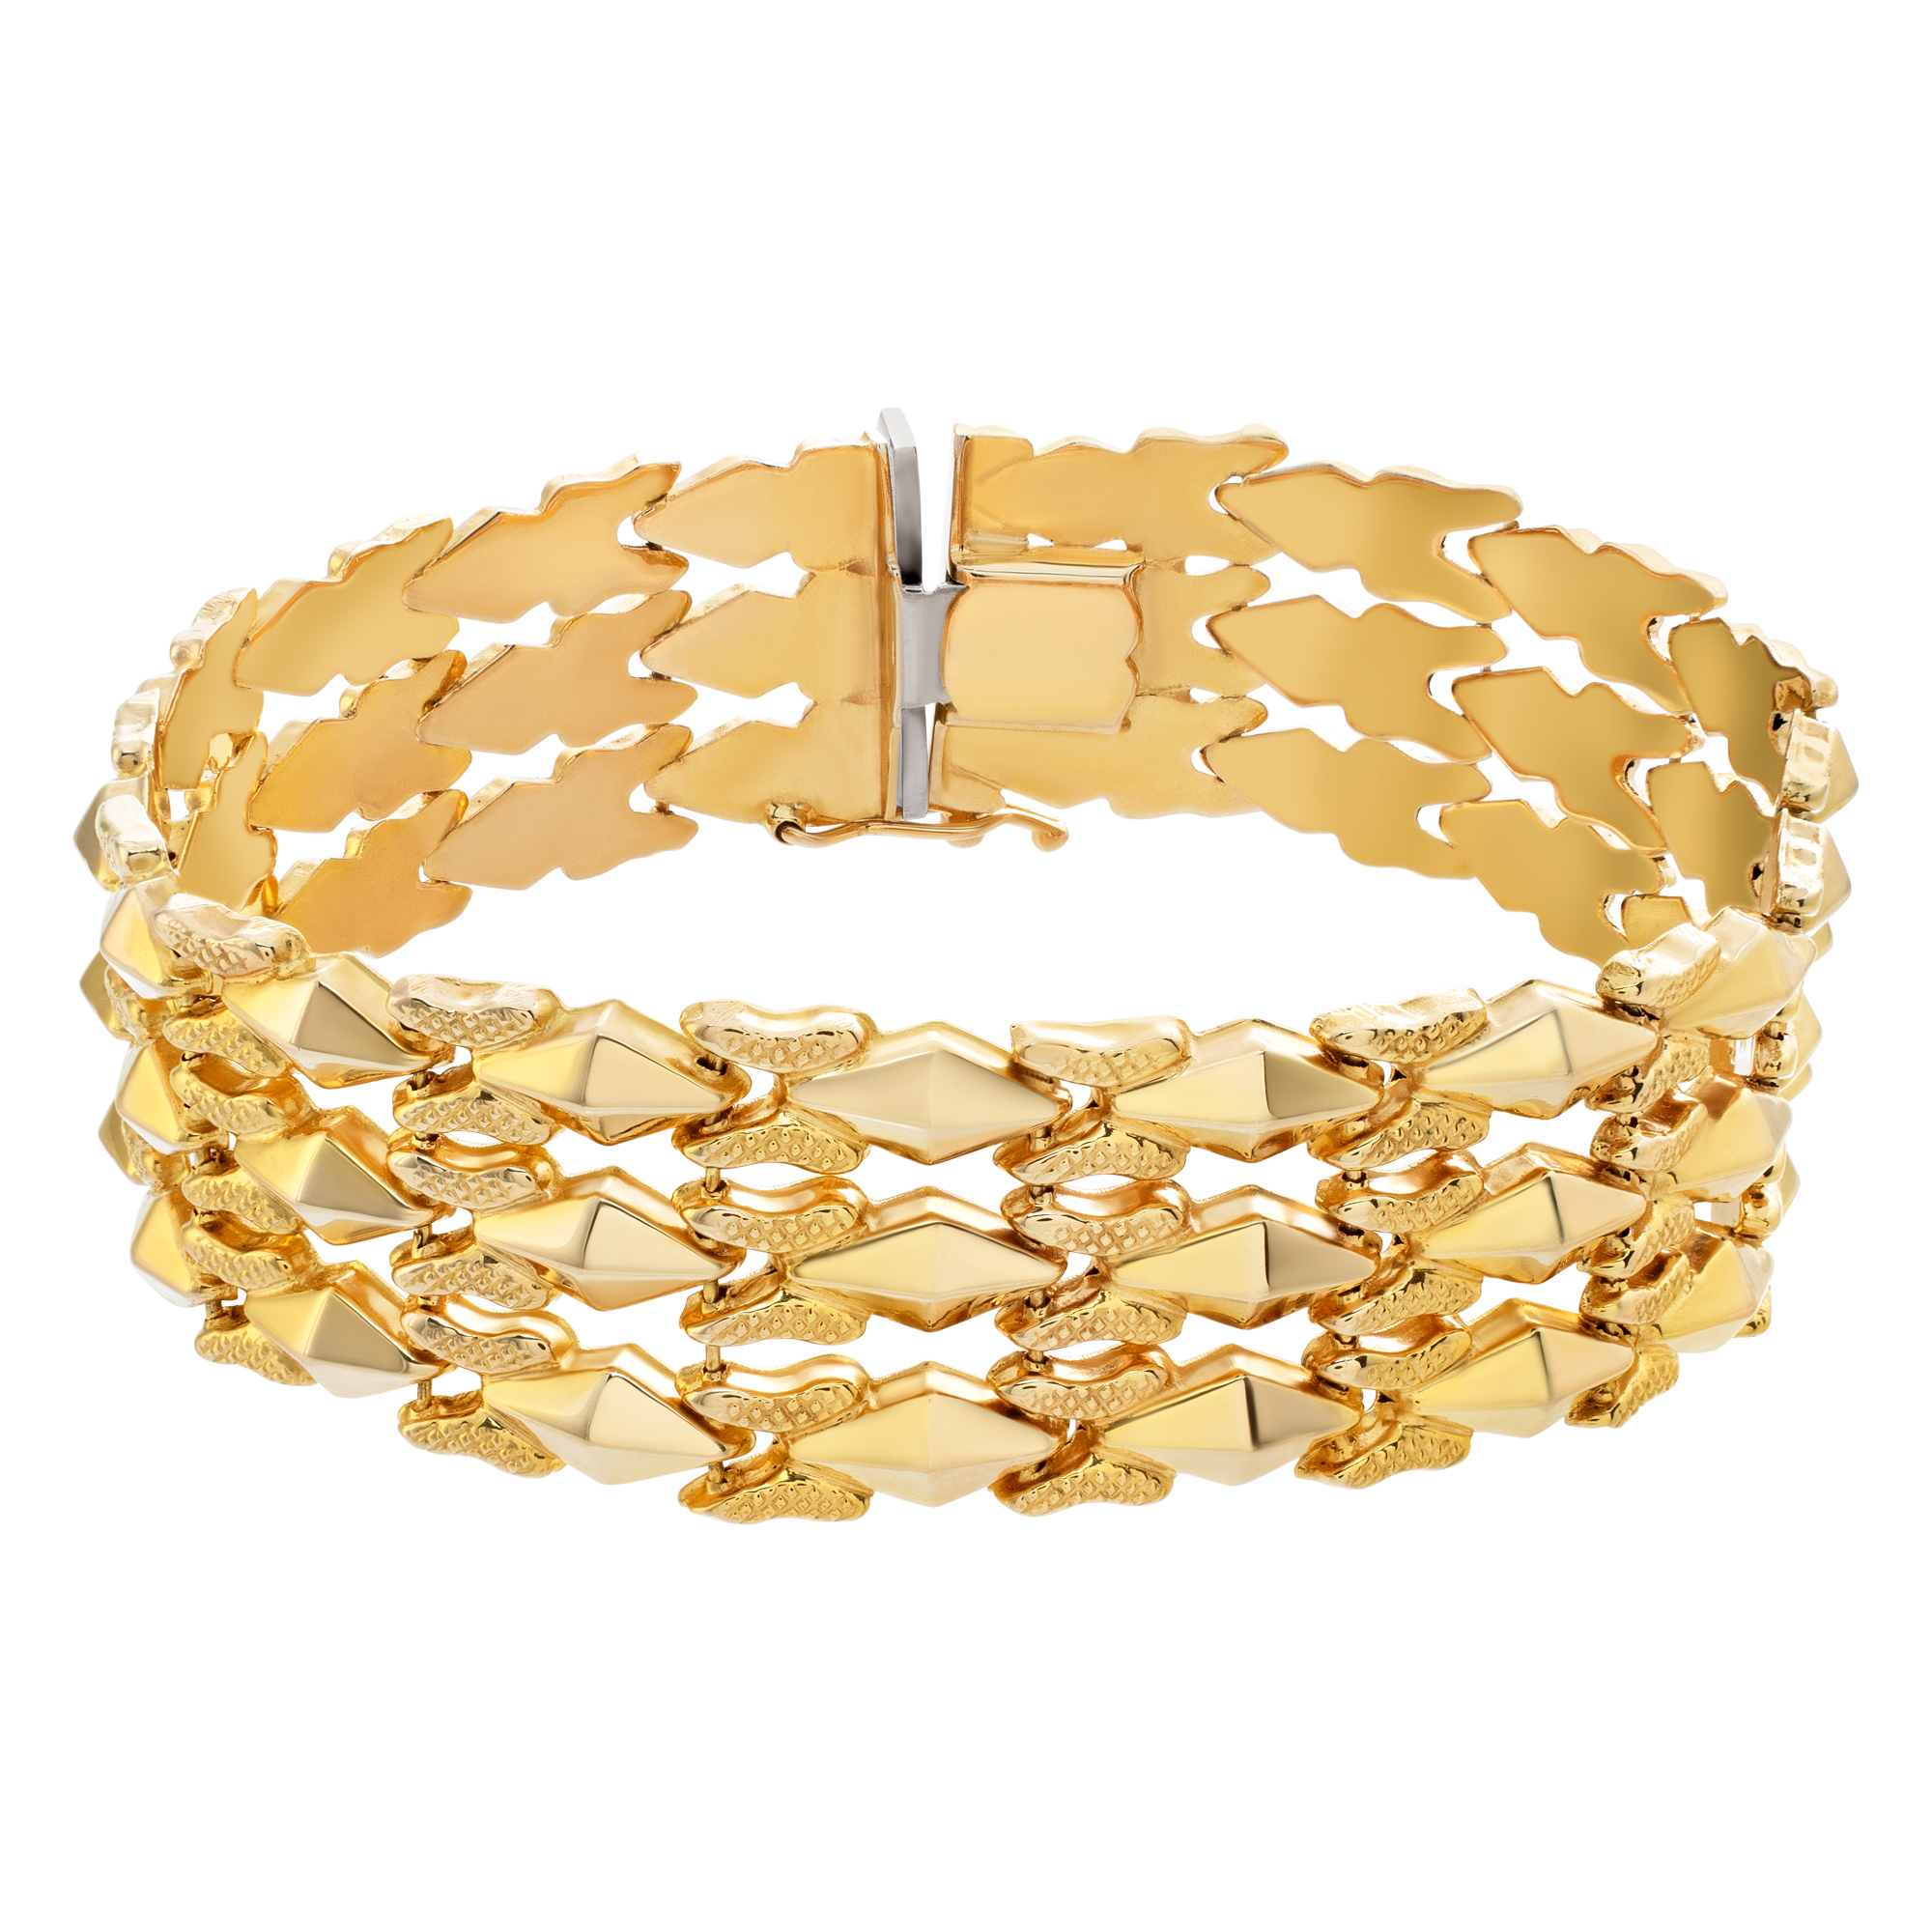 Beautiful wide flexible 18k rose gold bracelet